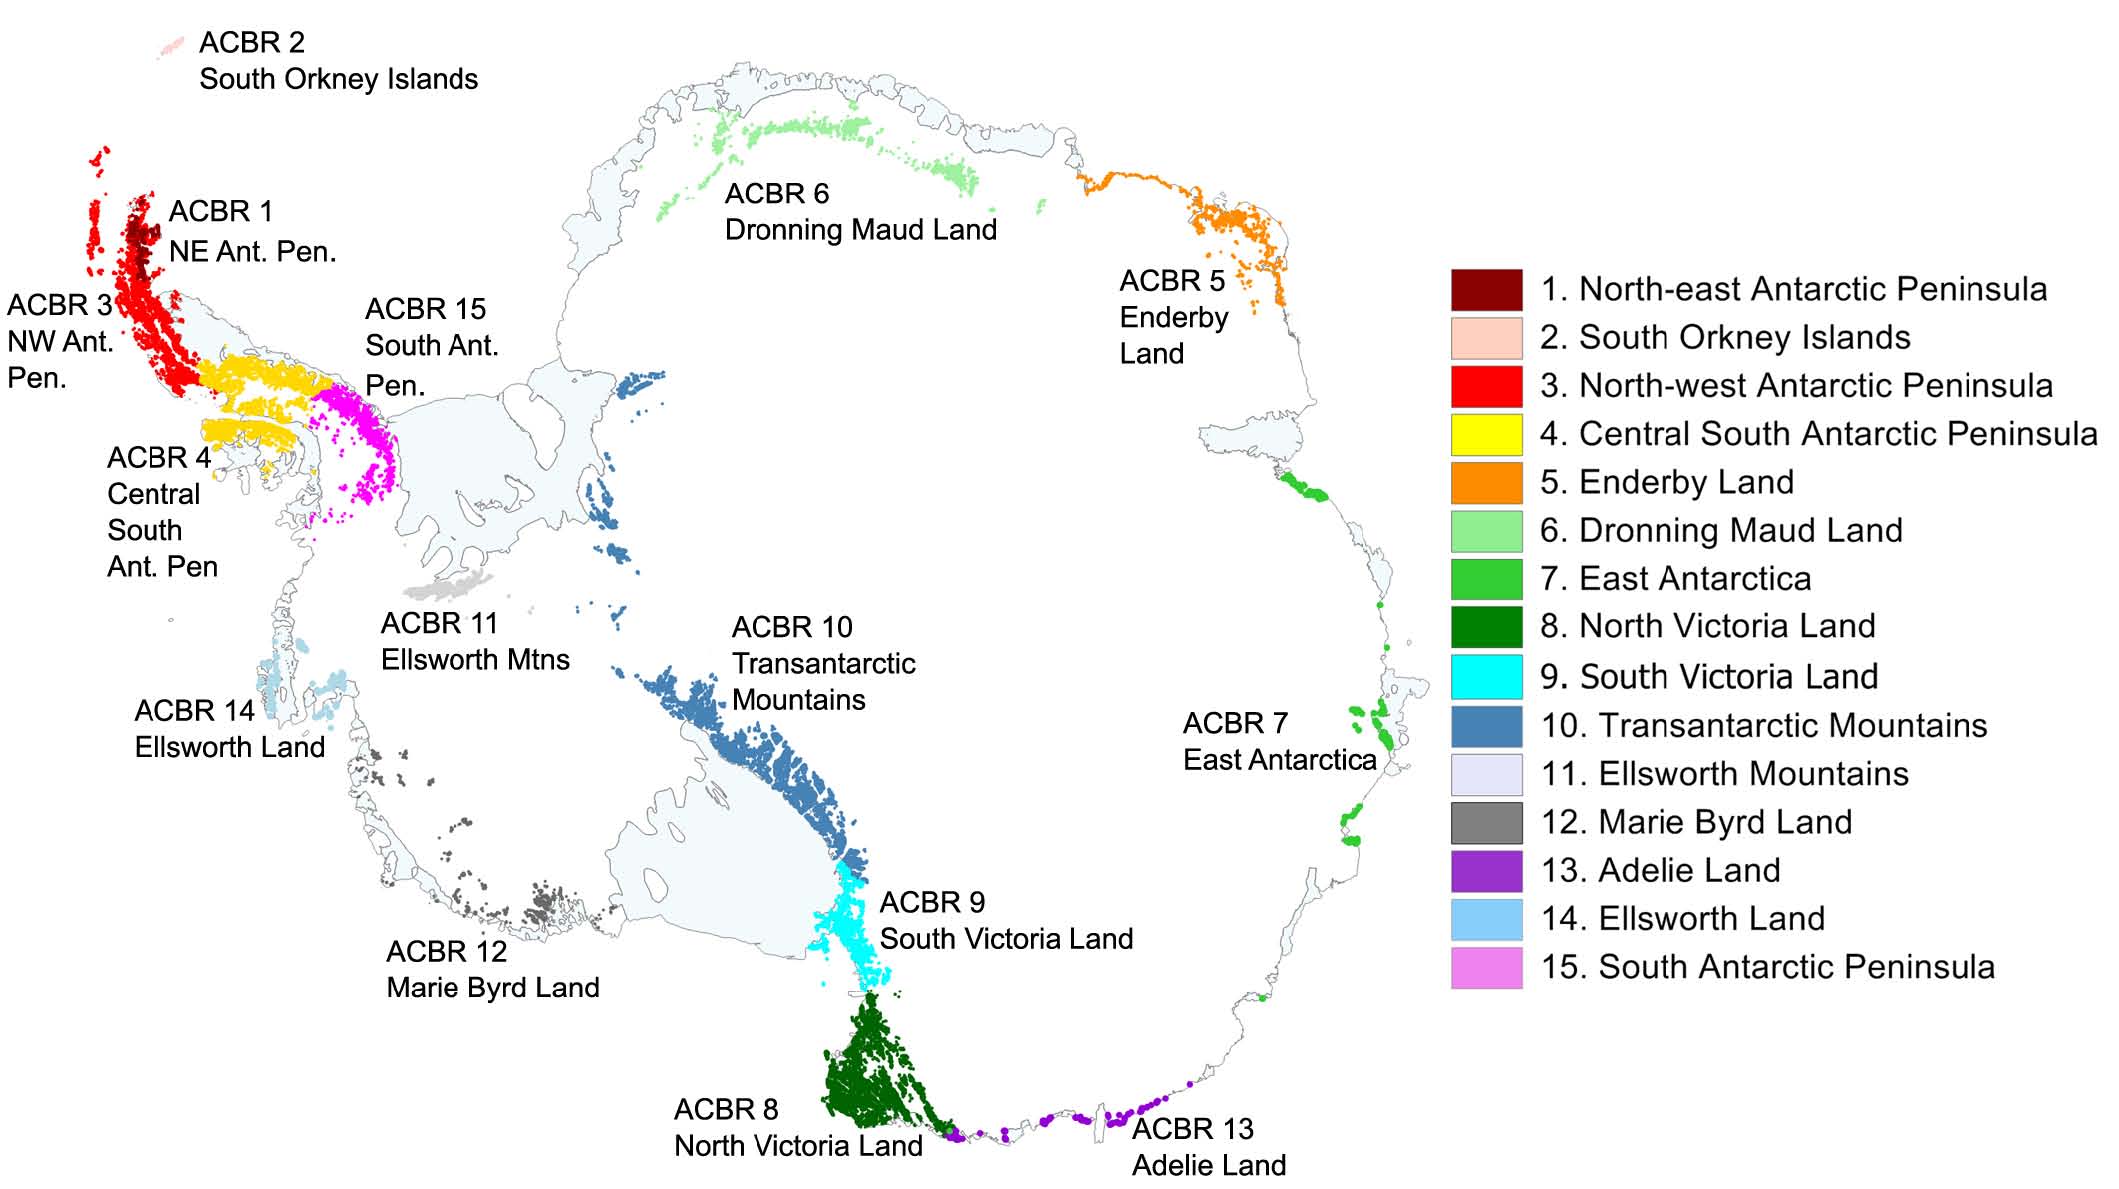 Fifteen Antarctic Biogeographic Regions